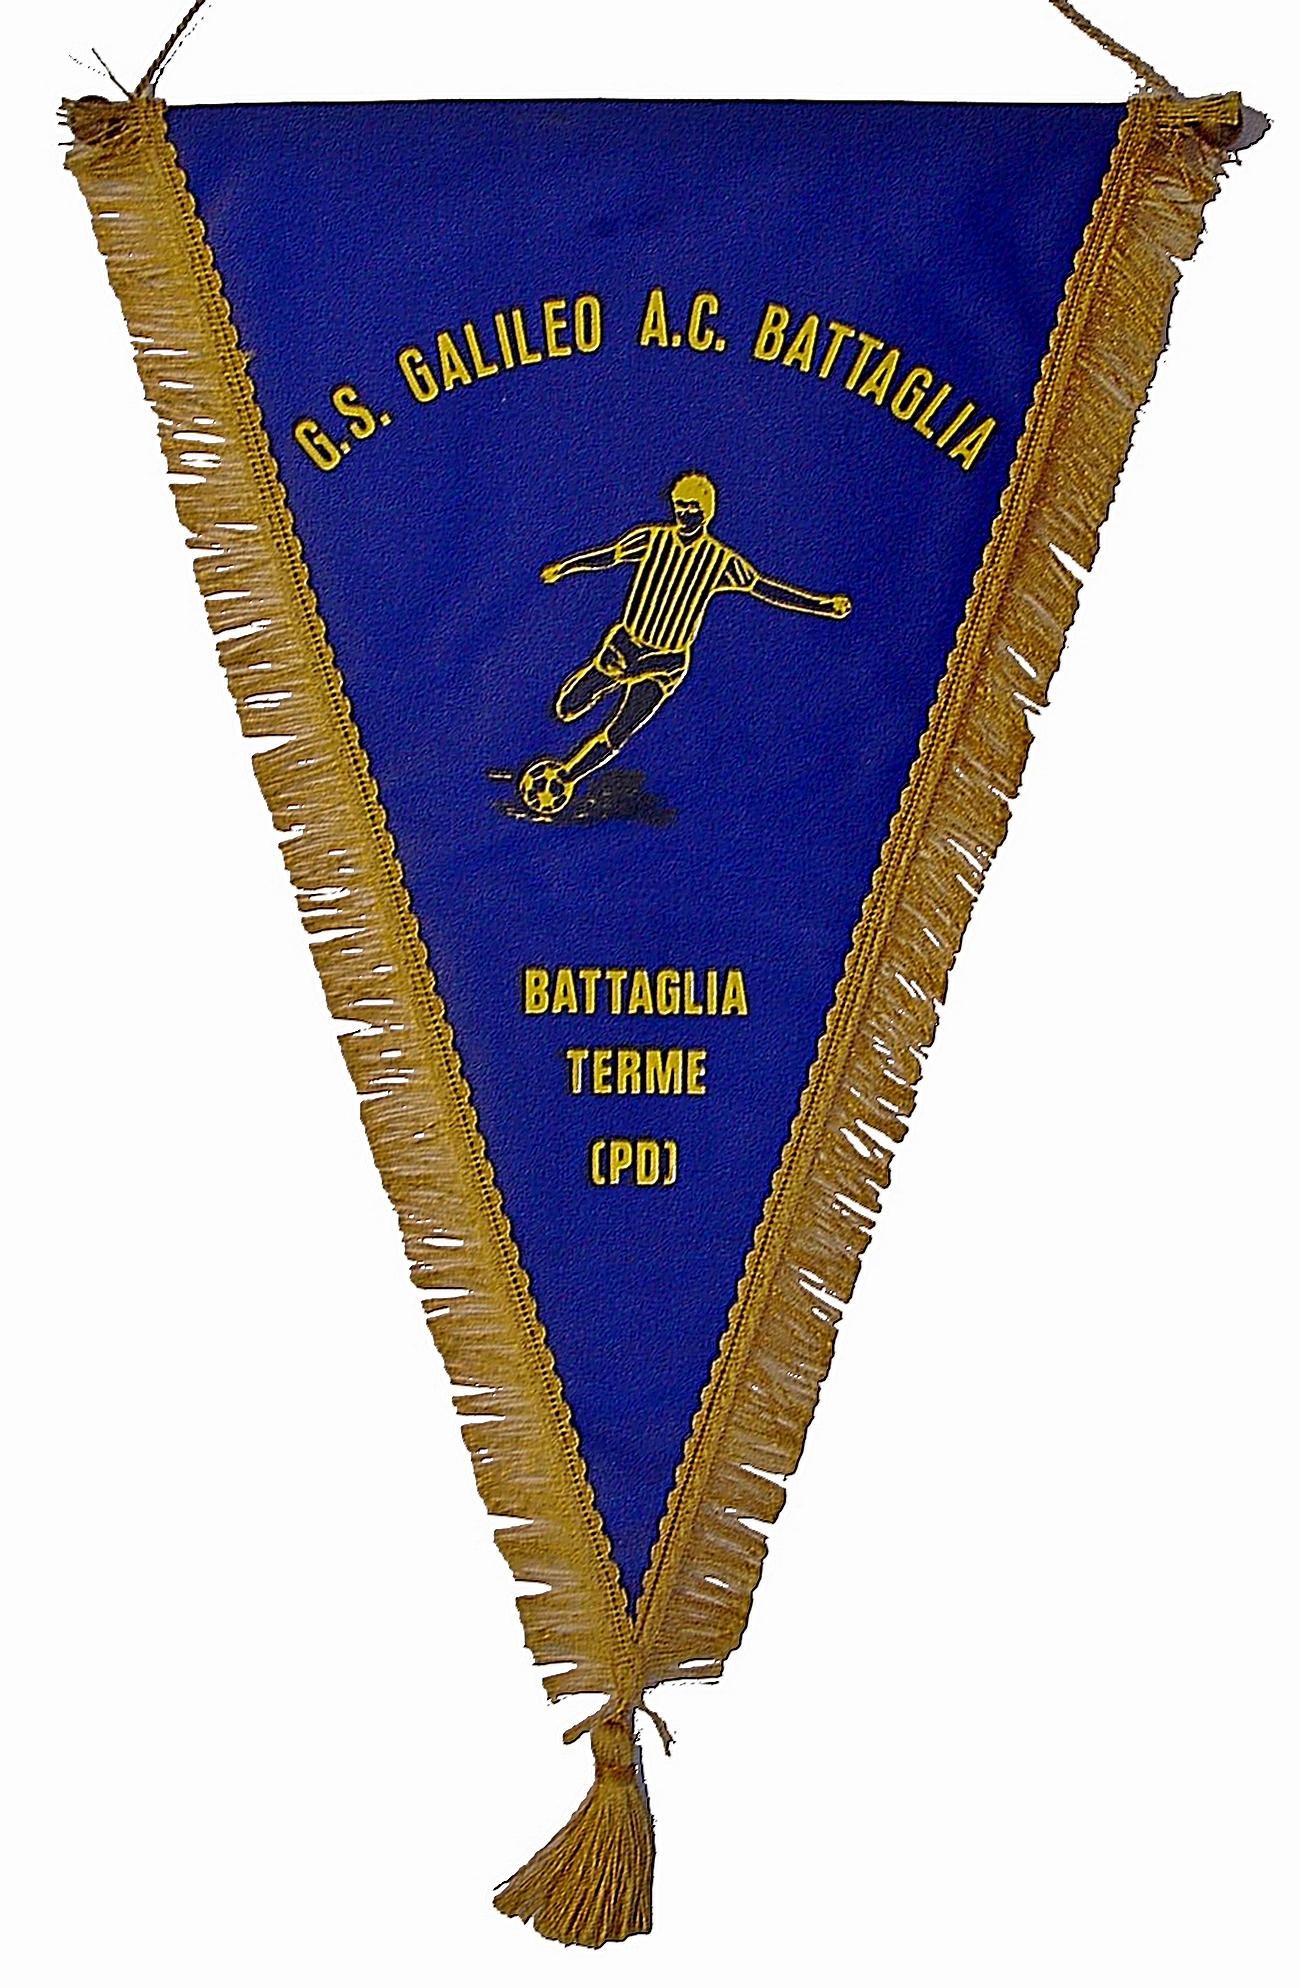 Gagliardetto del G.S. Galileo A.C. Battaglia.